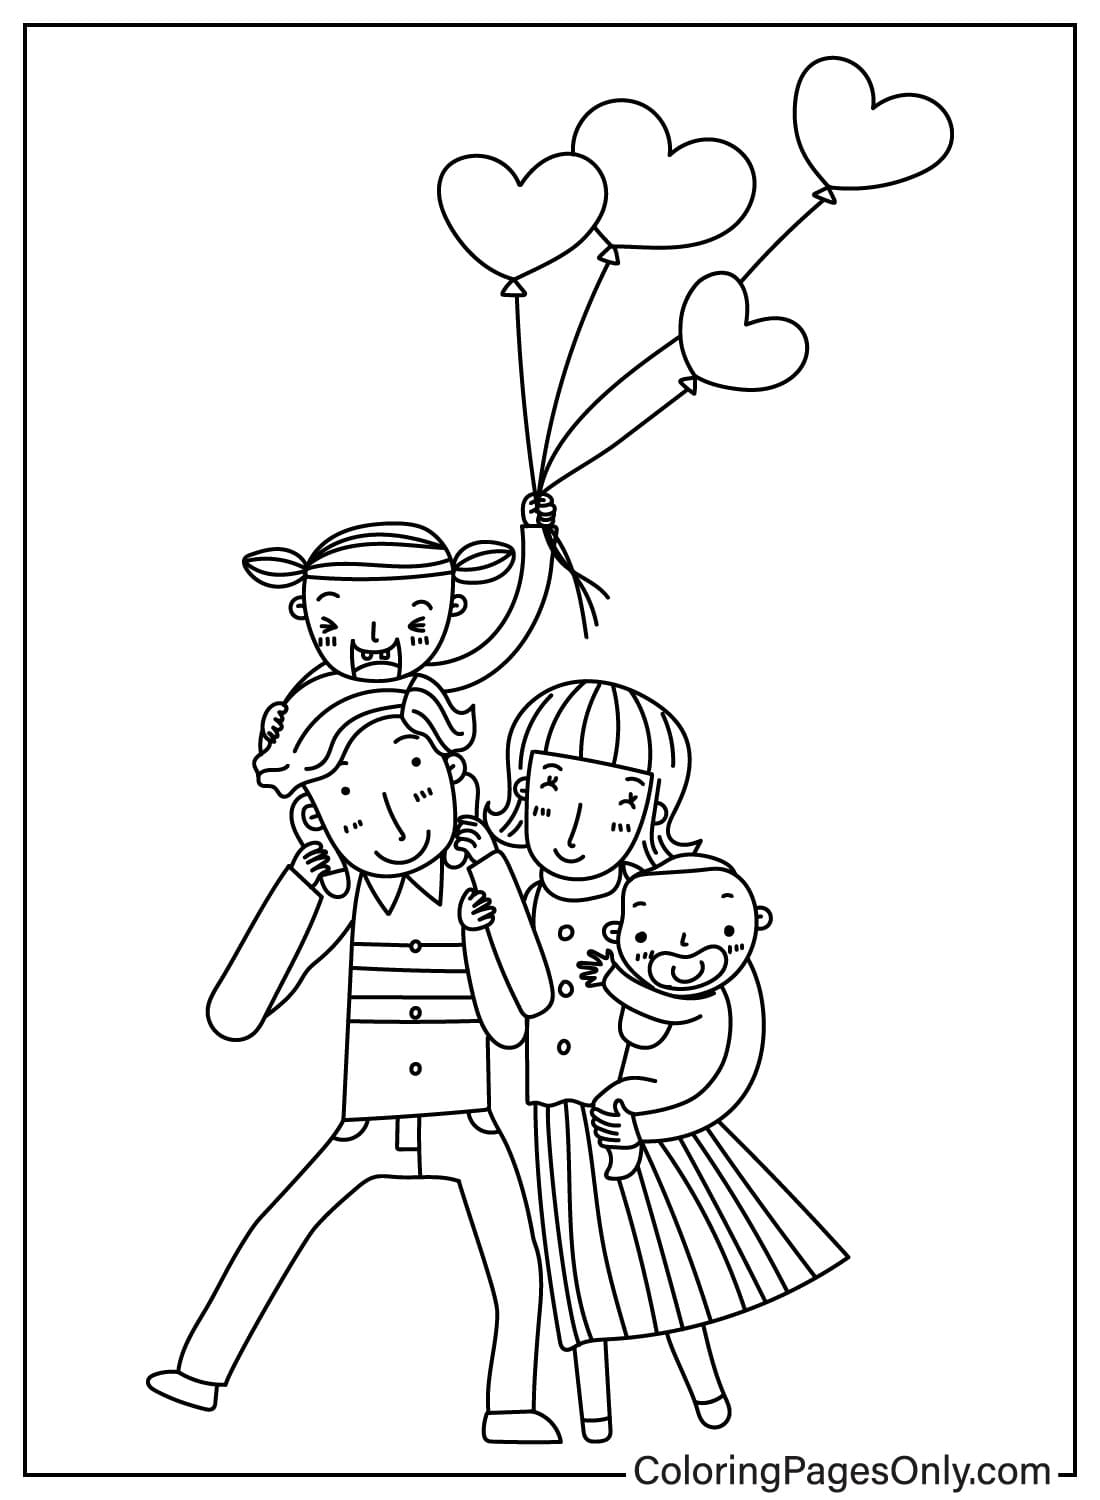 Página para colorear del feliz día de la familia del Día de la familia